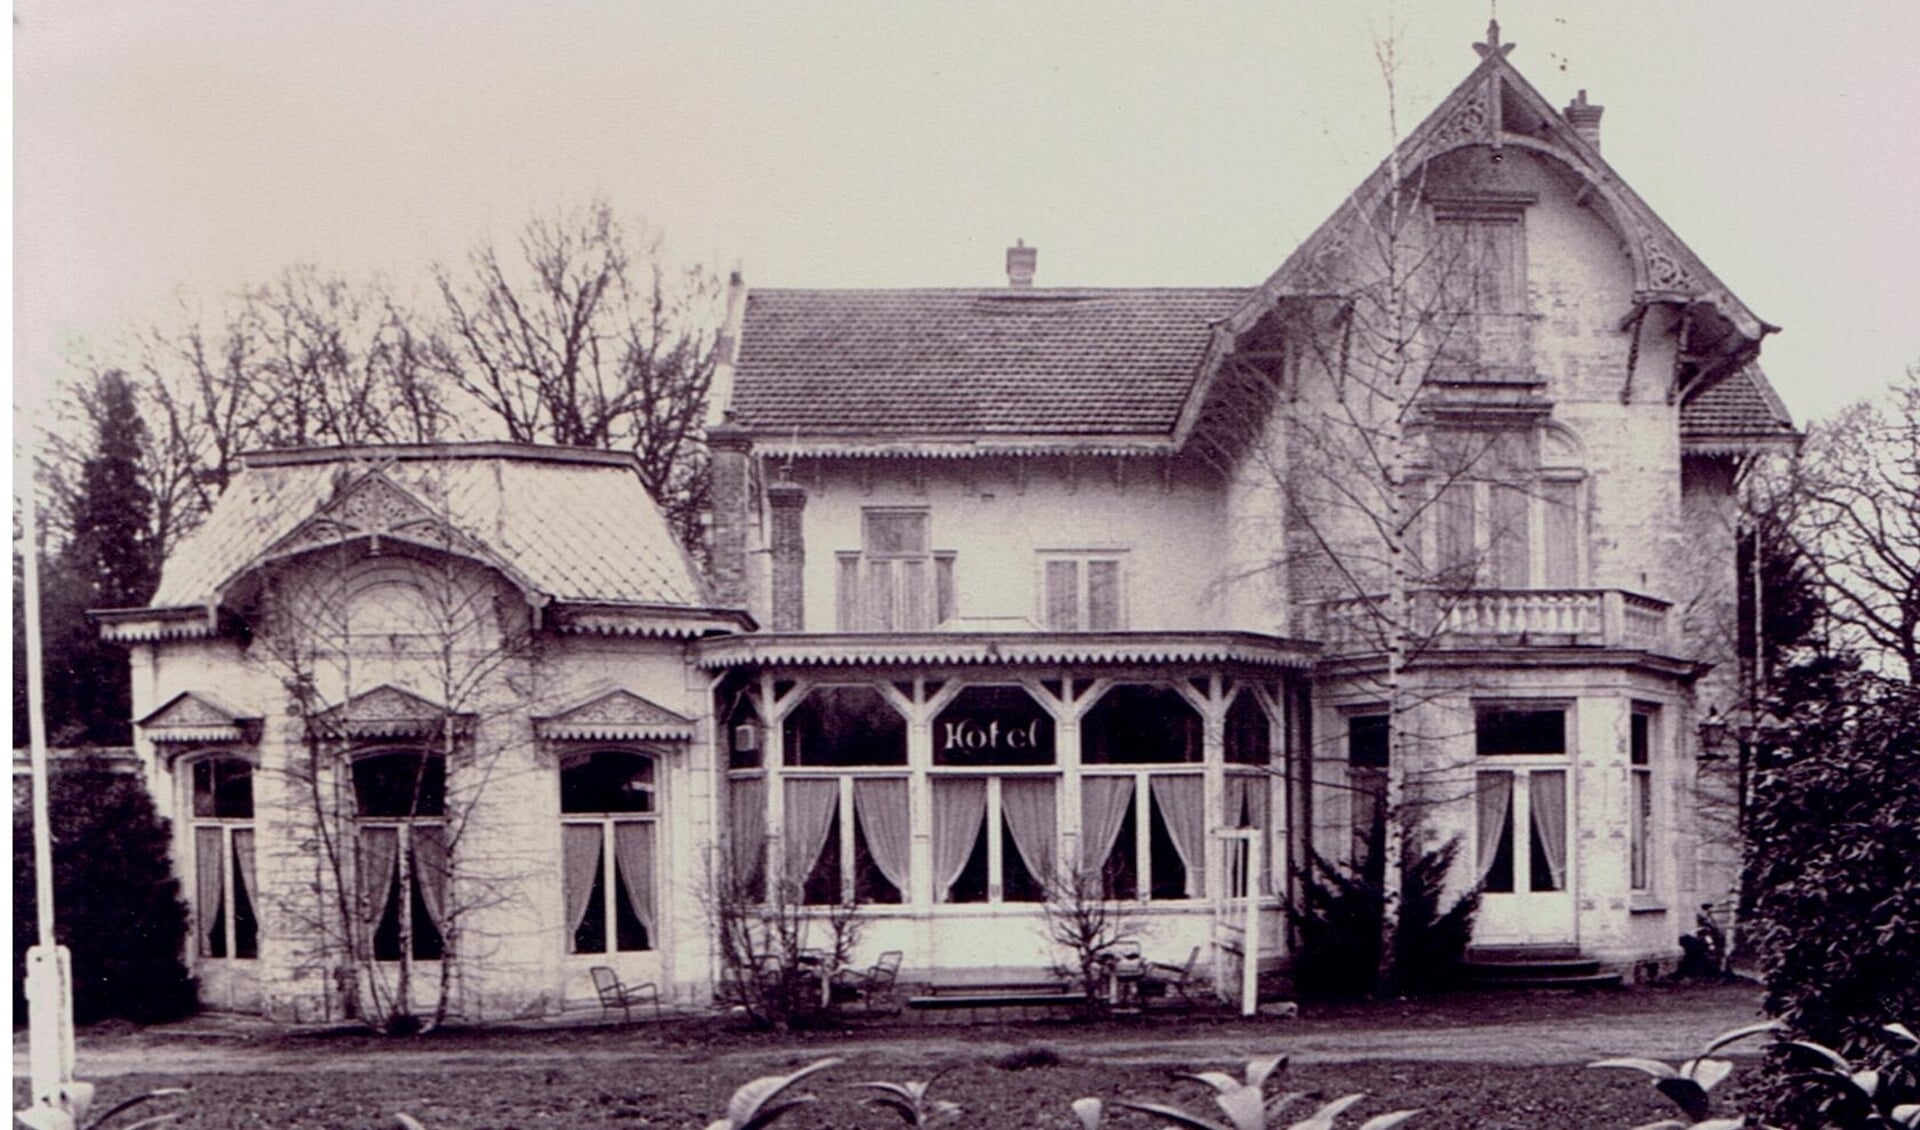 Het Java Hotel, later het Oranje Hotel. Het gold in die tijd wat inrichting betreft als een hotel van uitzonderlijke luxe en sfeer.